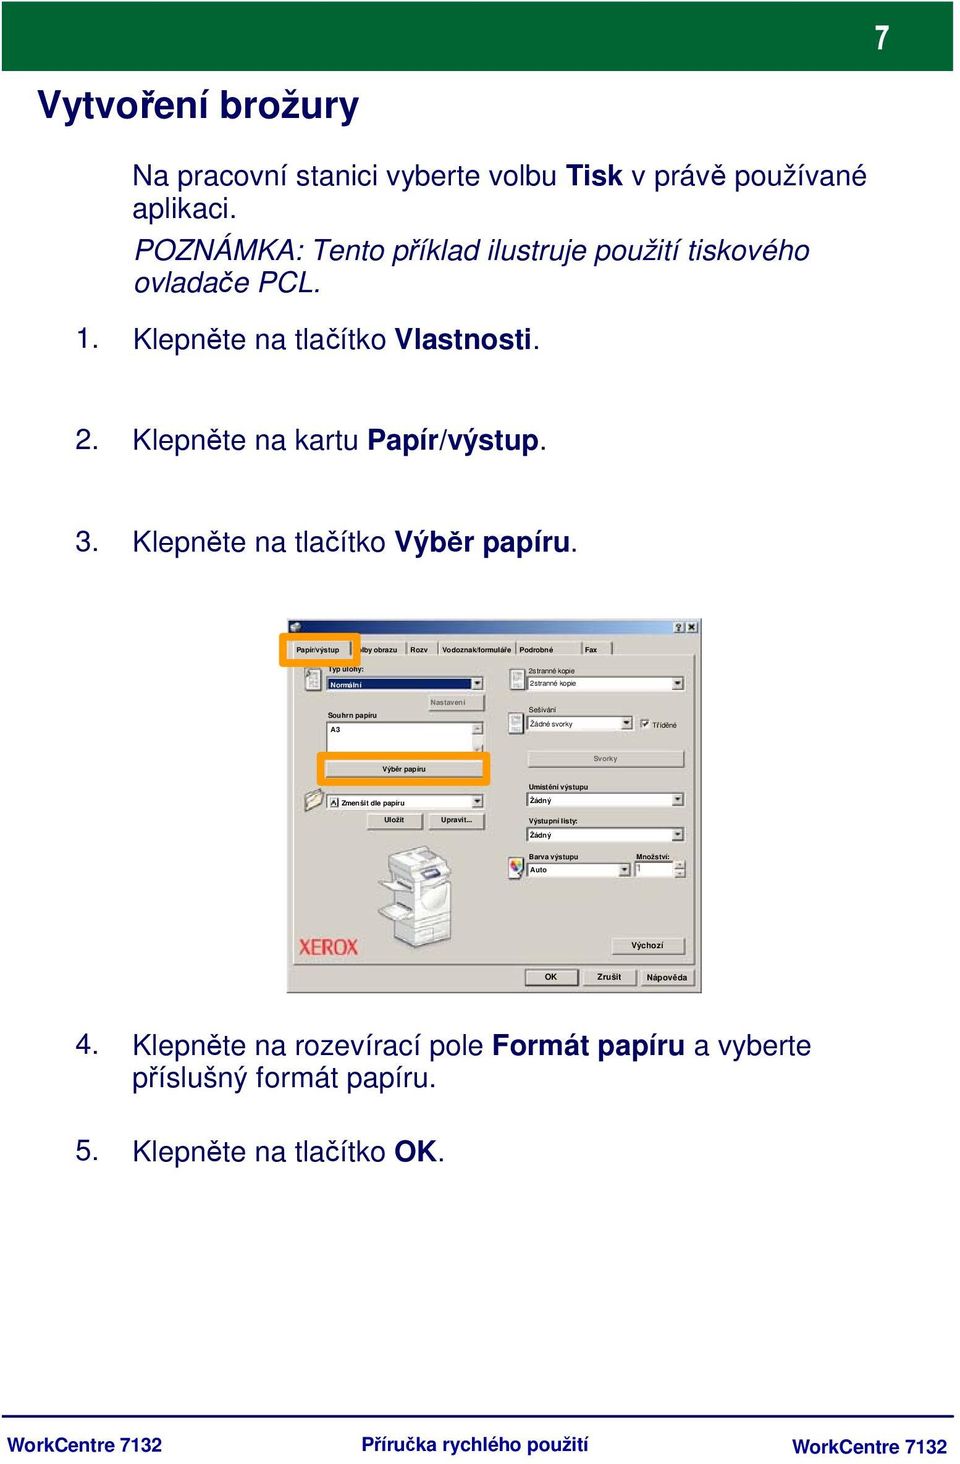 Papír/výstup Volby obrazu Rozv Vodoznak/formuláře Podrobné Fax Typ úlohy: 2stranné kopie Normální 2stranné kopie Souhrn papíru A3 Nastavení Sešívání Žádné svorky Tříděné Výběr